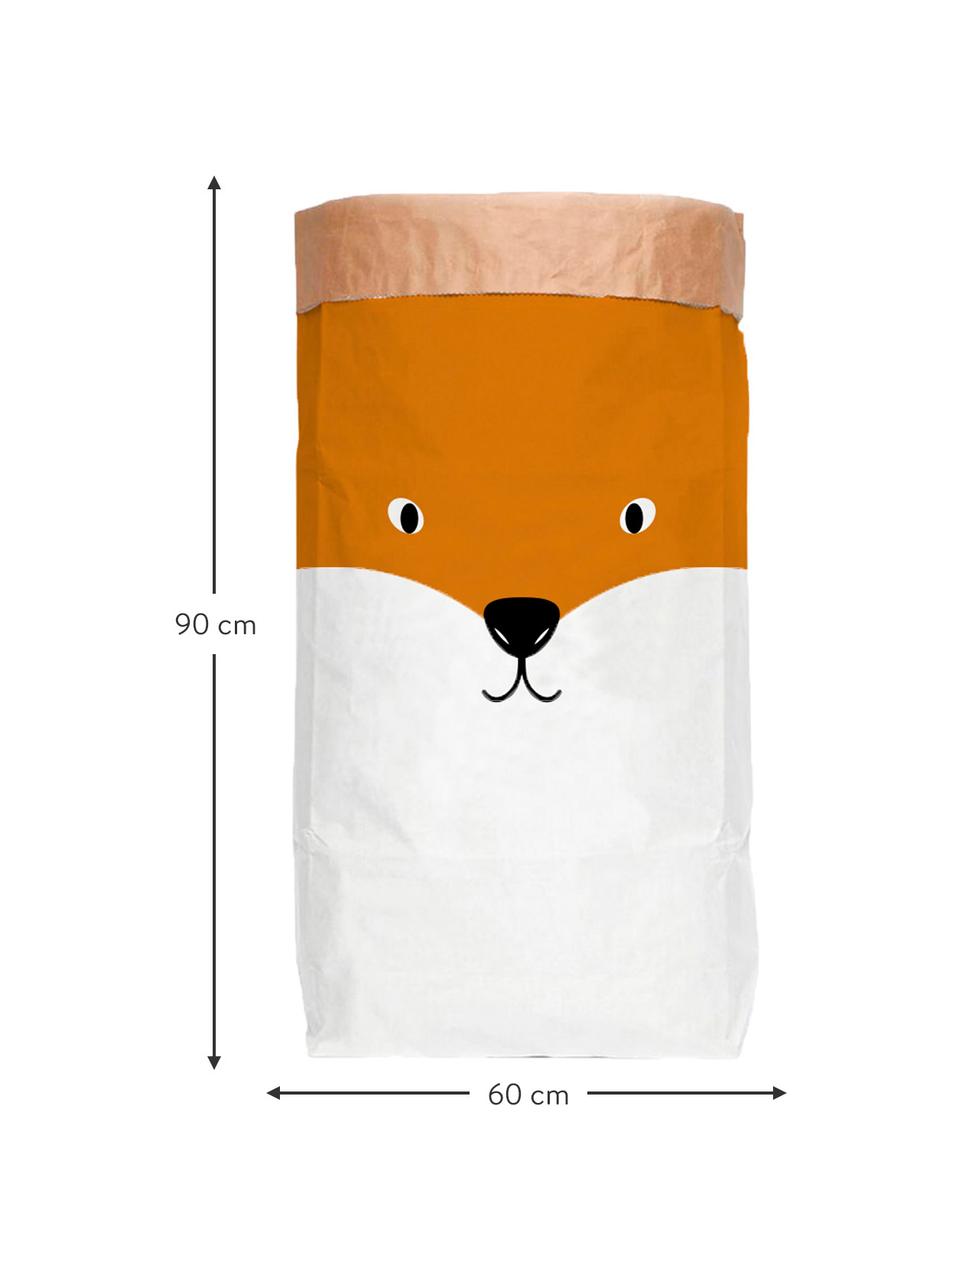 Torba do przechowywania Fox, Papier recyklingowy, Biały, pomarańczowy, S 60 x W 90 cm